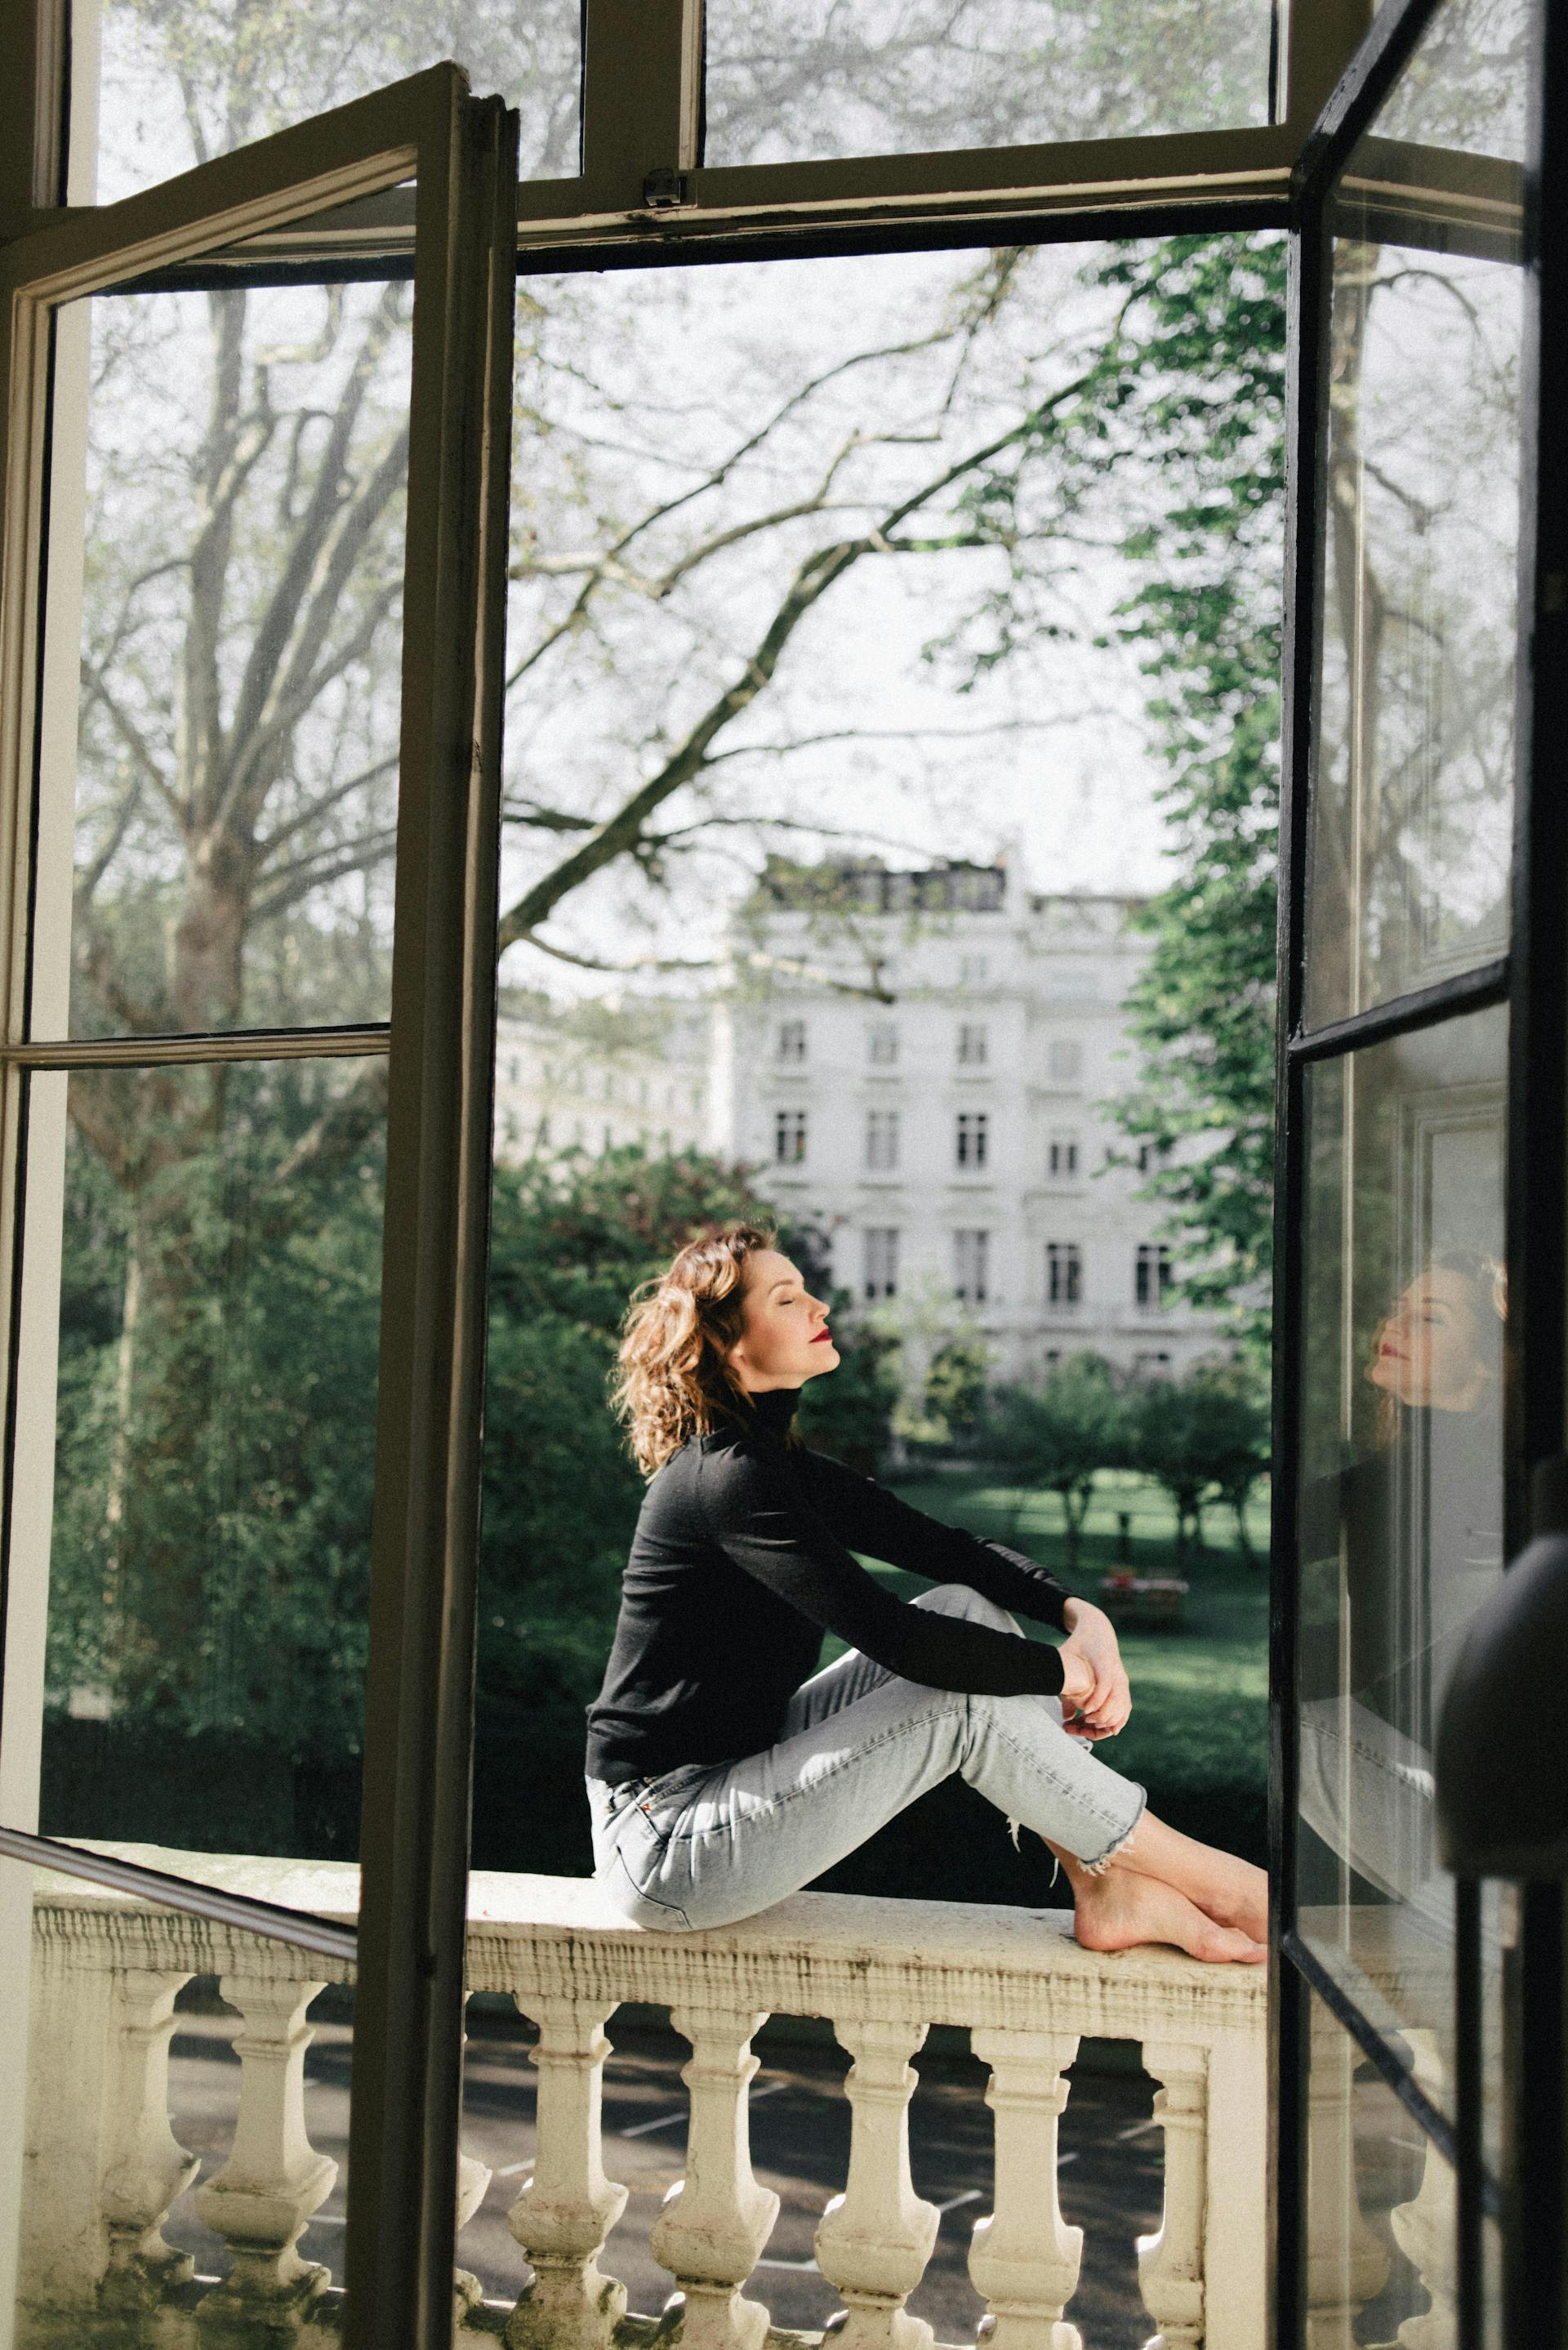 Una mujer sentada en un balcón | Fuente: Pexels